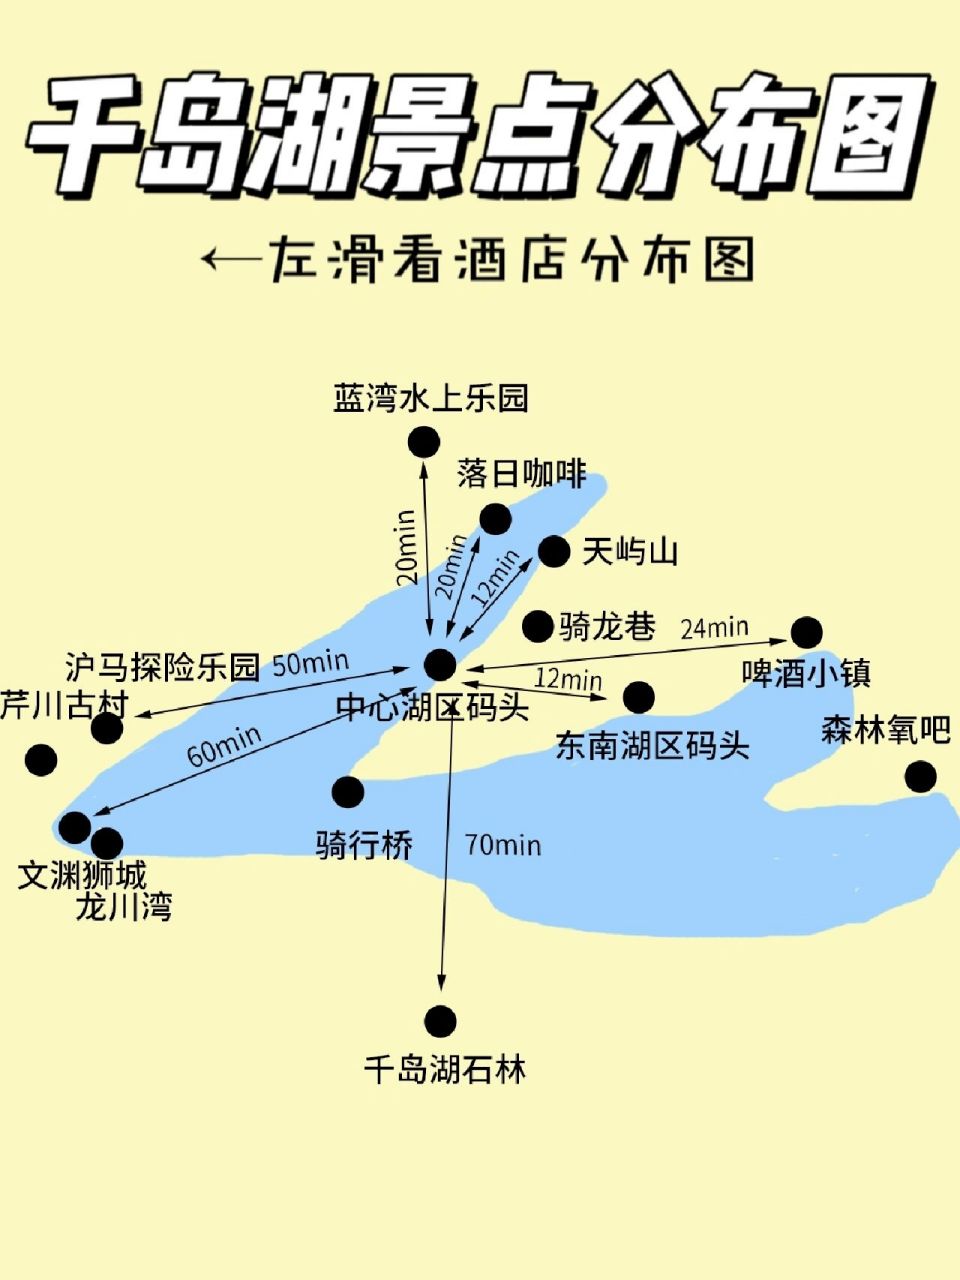 千岛湖地图全图高清版图片